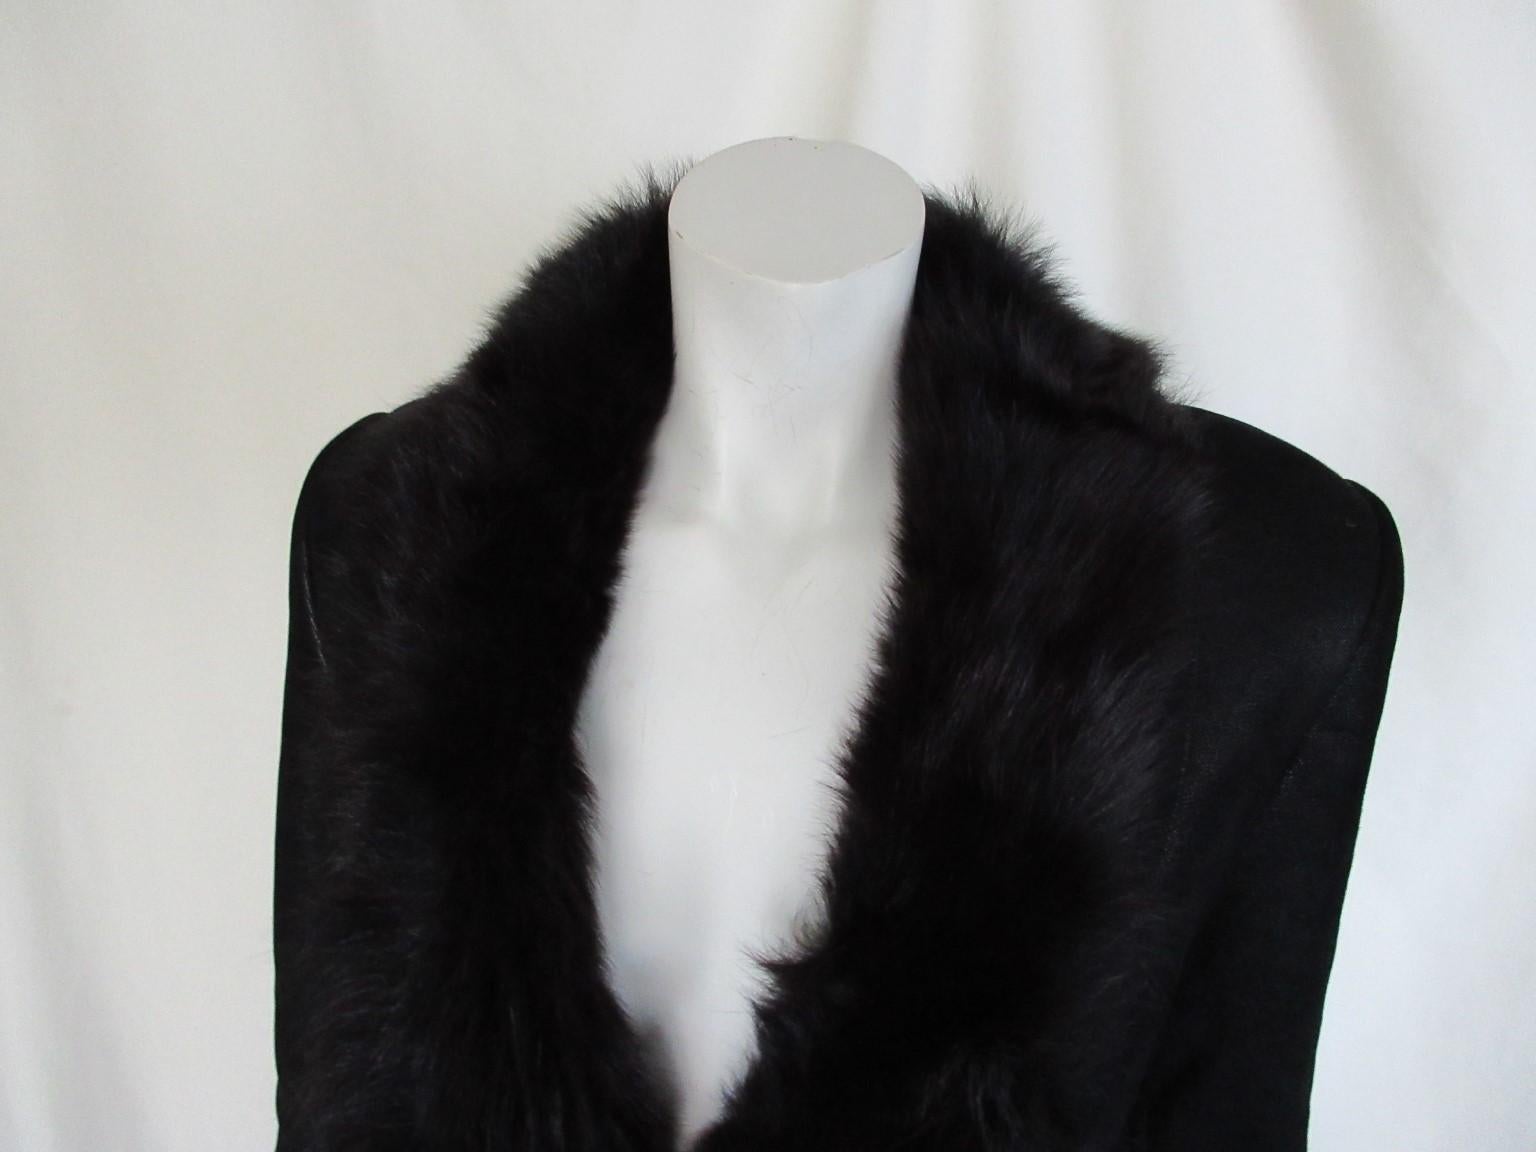 Cette veste Gucci est fabriquée en fourrure d'agneau de Toscane noire.

Nous proposons d'autres articles Gucci, Hermes et des articles exclusifs en fourrure, consultez notre boutique.

Détails :
Fabriqué en shearling noir de qualité et doux, 
Avec 2